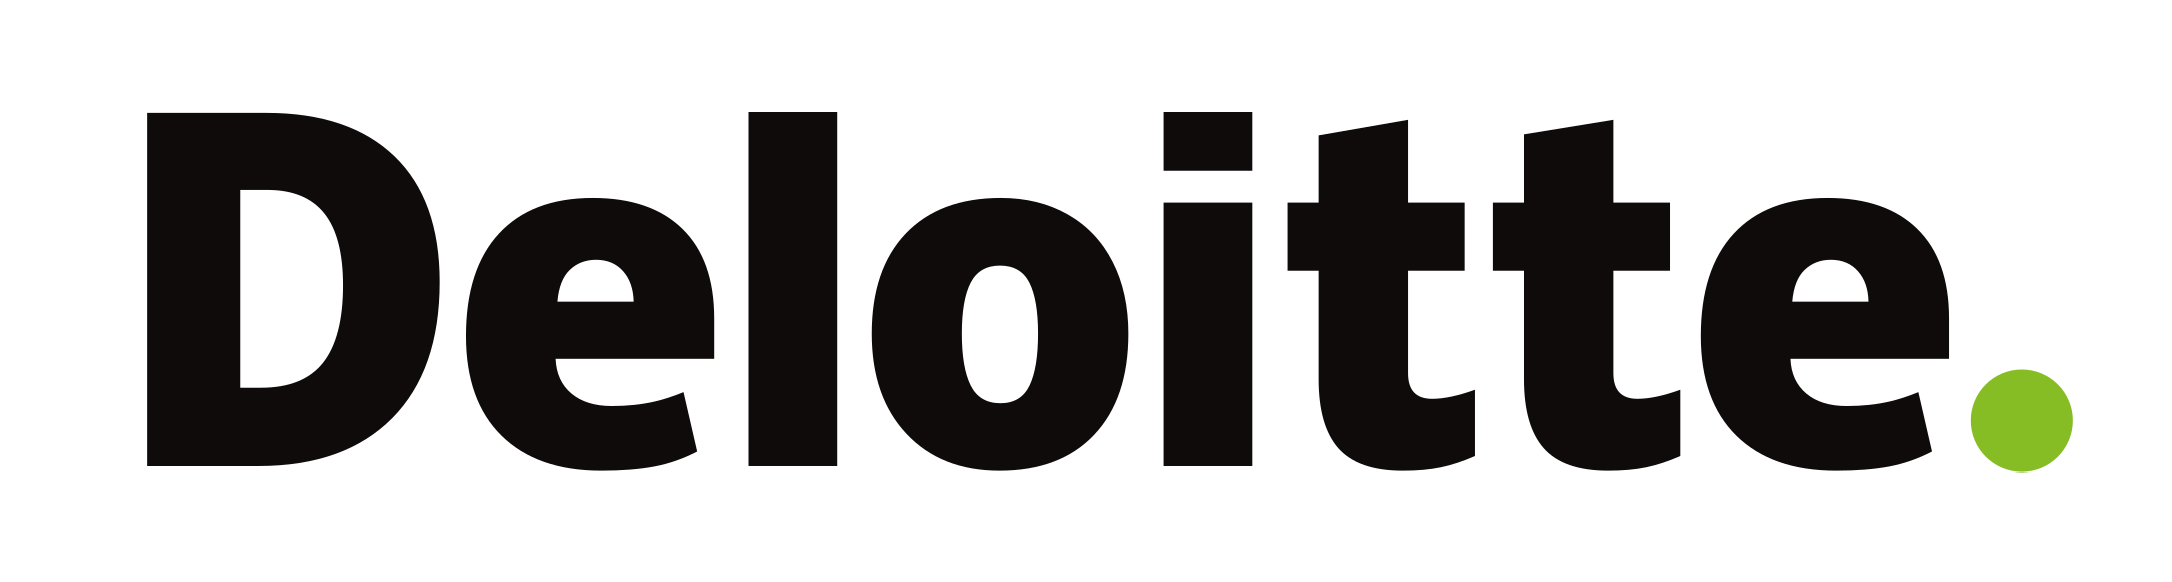 Logo_Deloitte.png